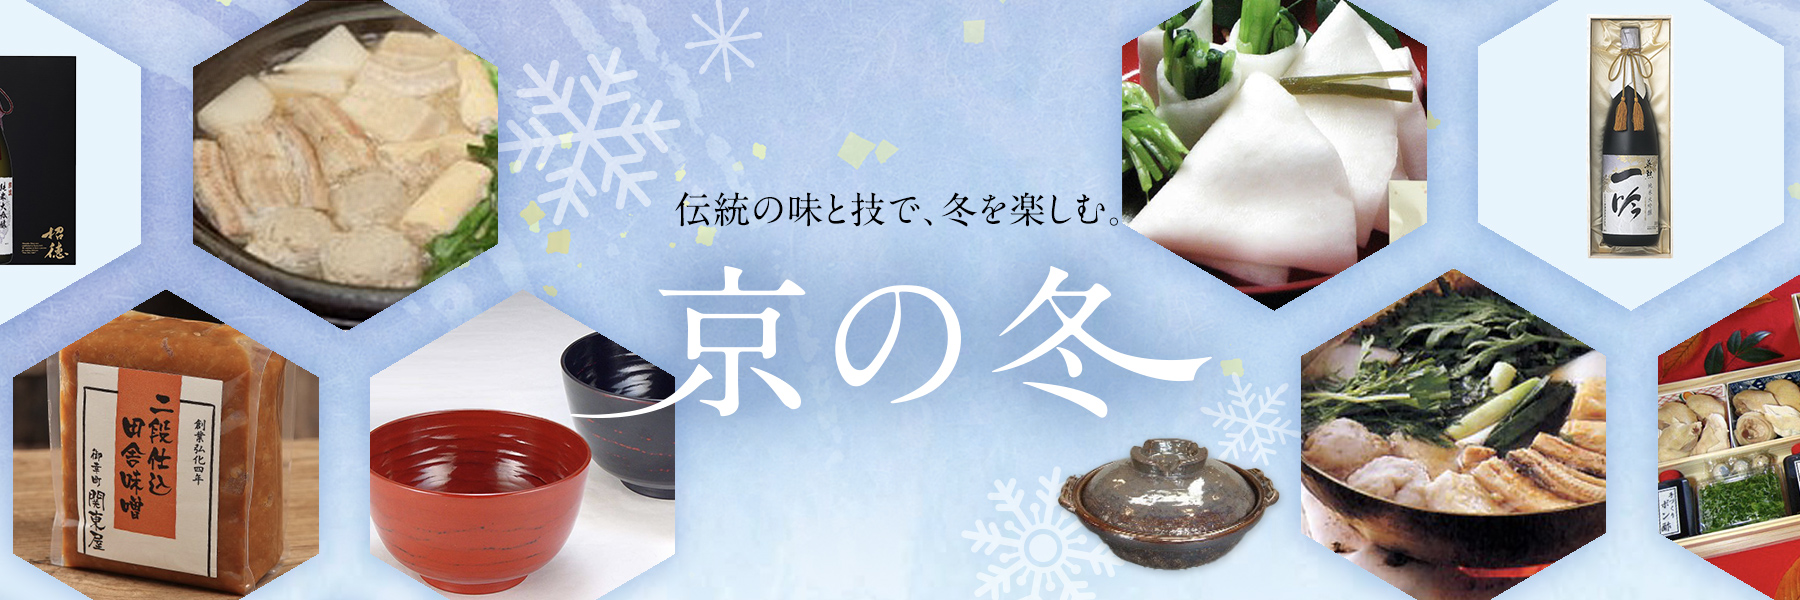 伝統の味と技で、冬を楽しむ。 京の冬